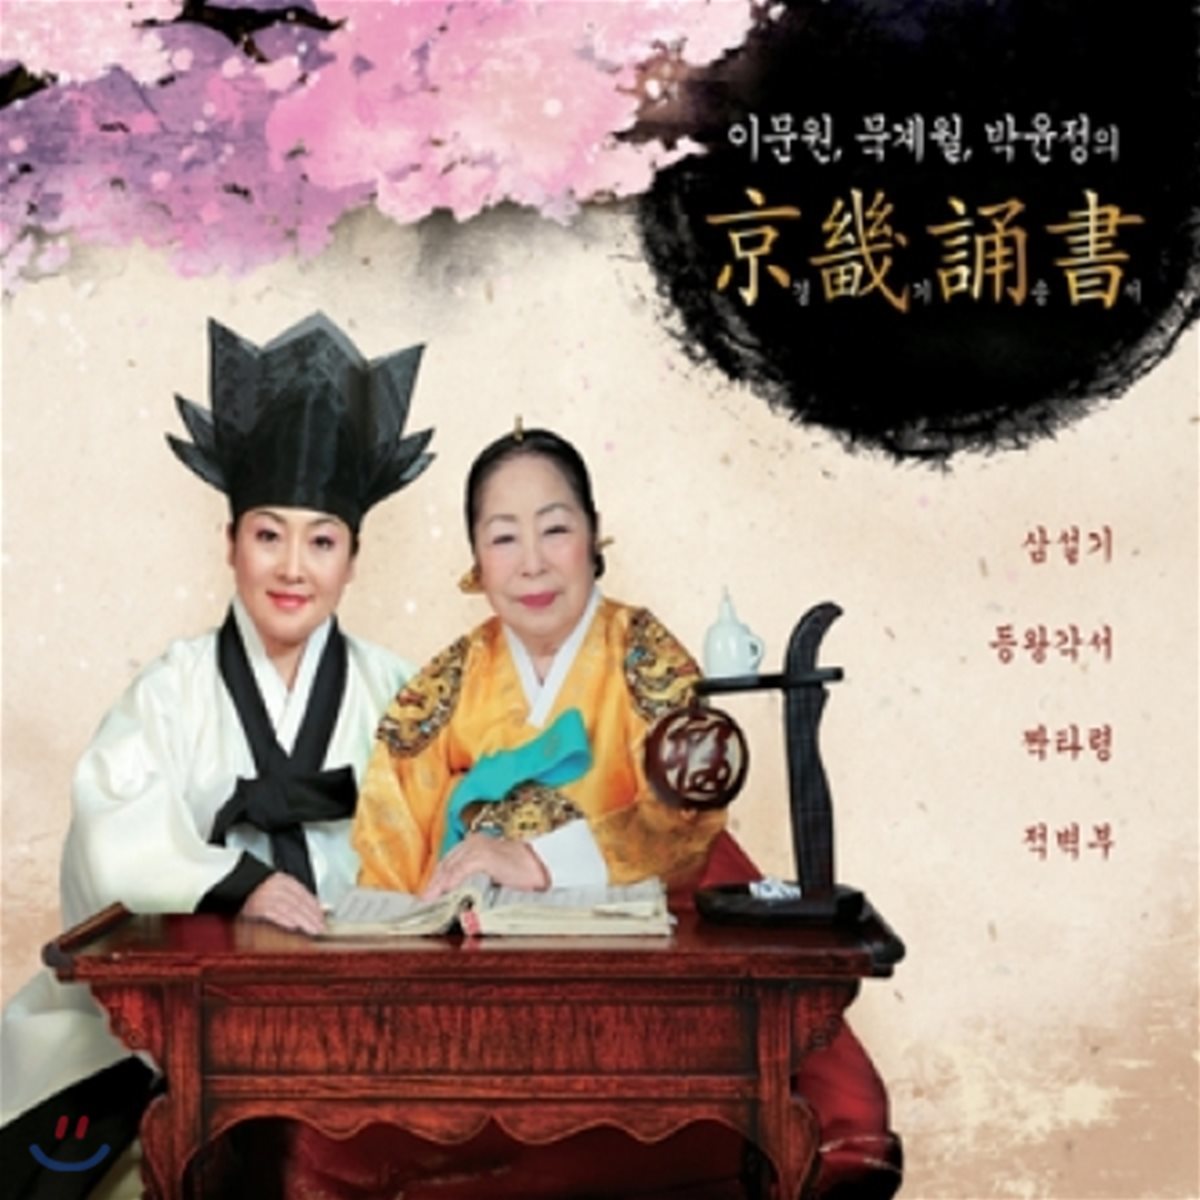 이문원, 묵계월, 박윤정 - 경기송서 (京畿誦書)